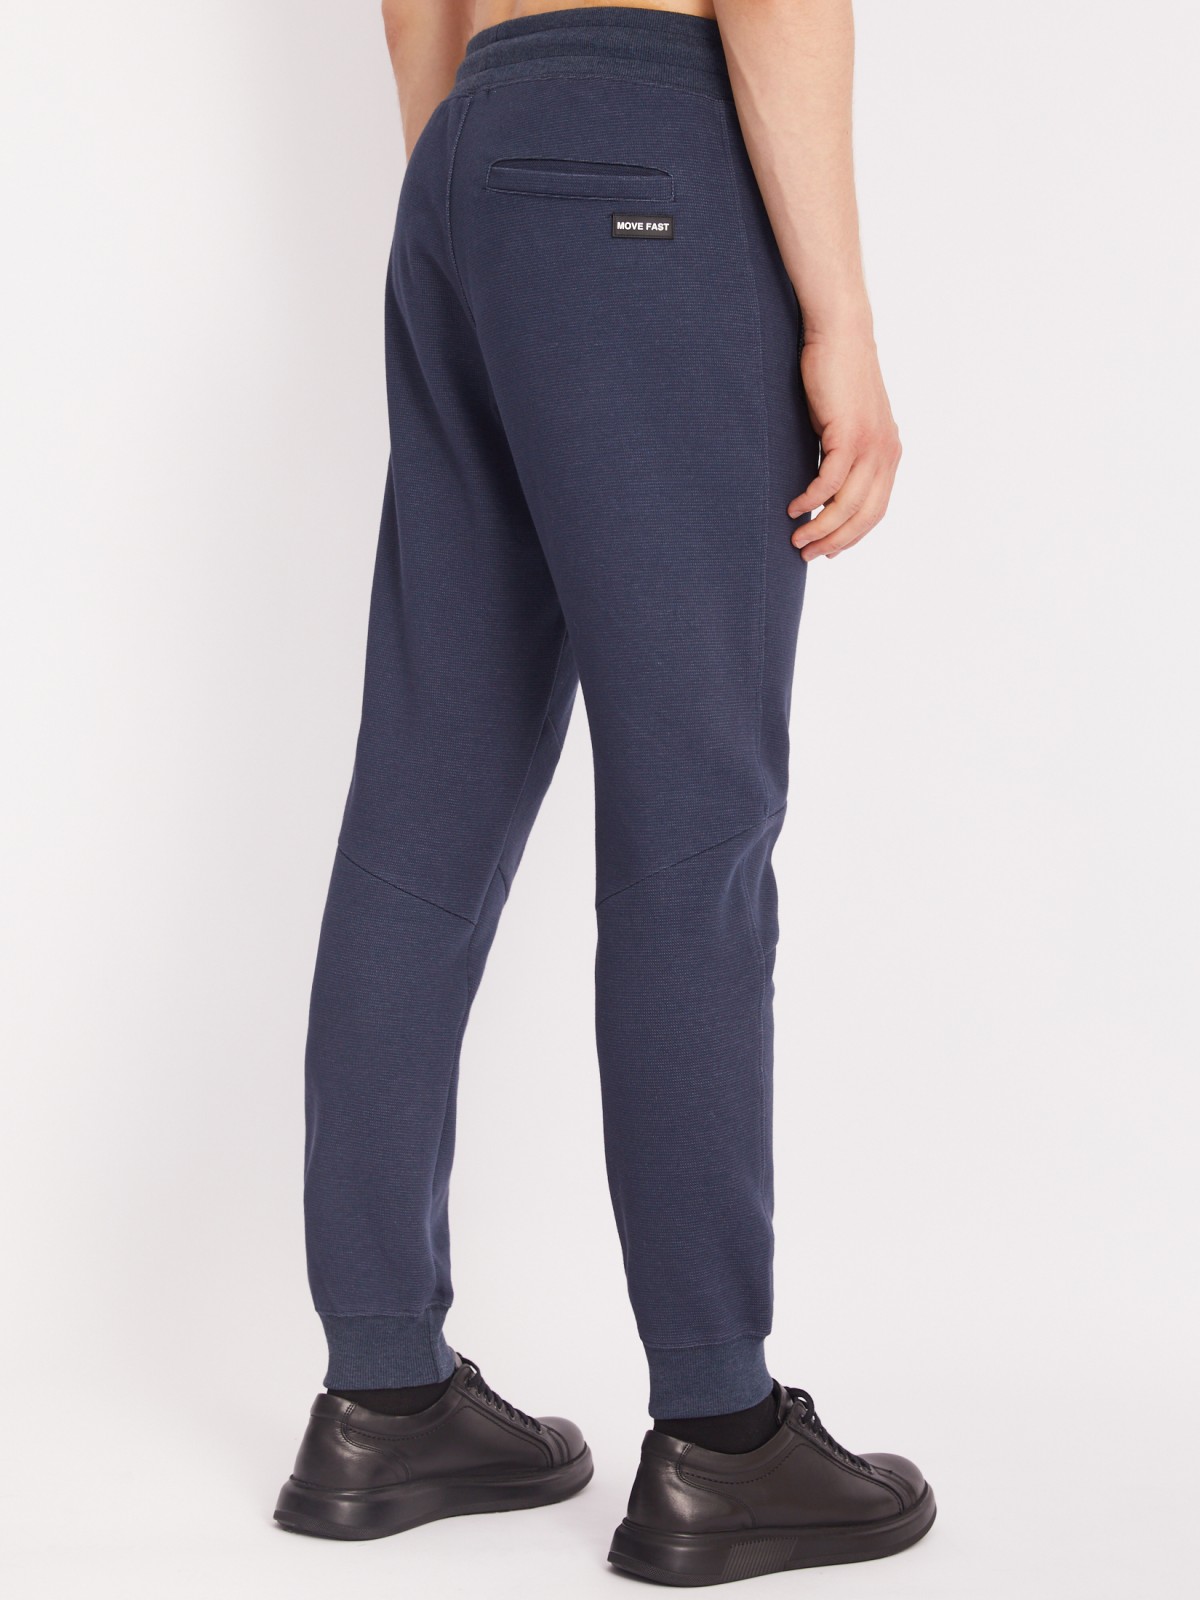 Трикотажные брюки-джоггеры в спортивном стиле zolla 213317679023, цвет синий, размер S - фото 5